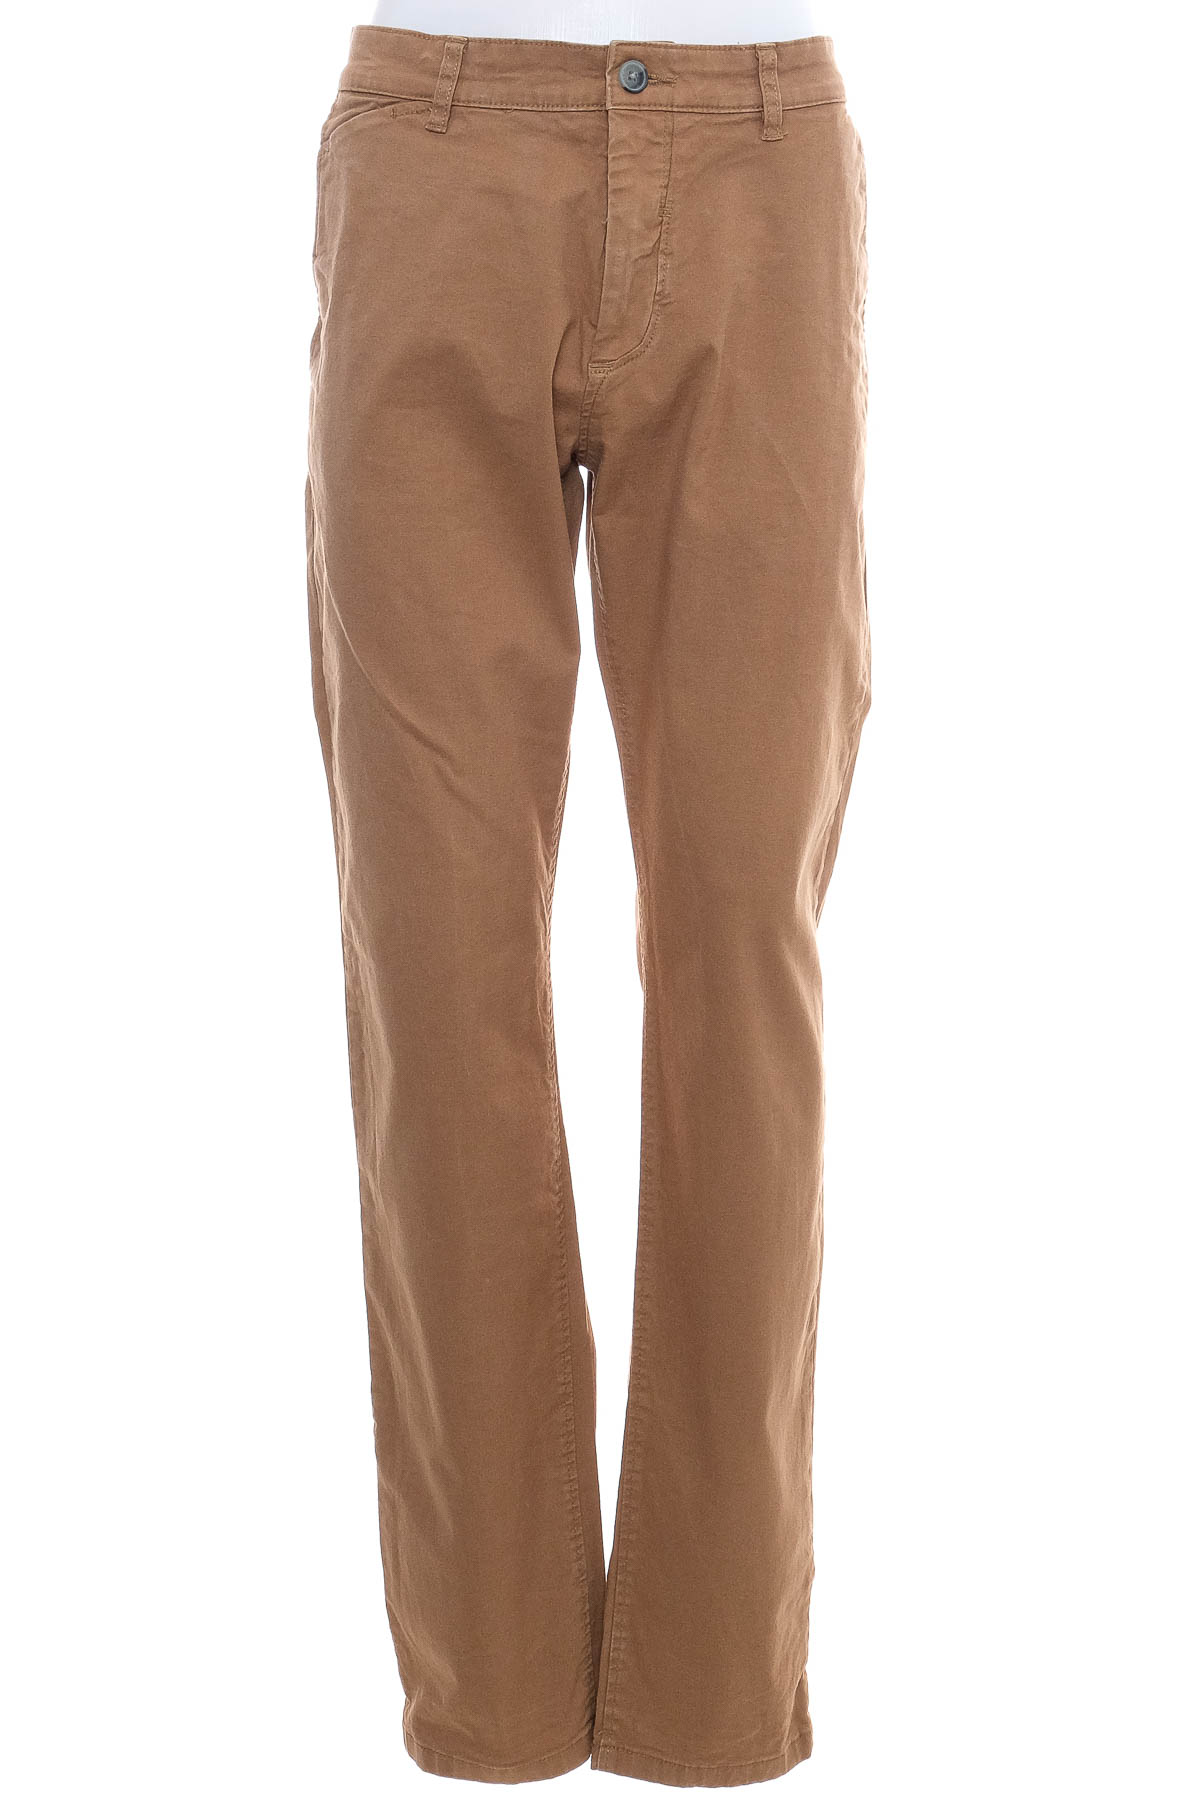 Men's trousers - ESPRIT Denim - 0